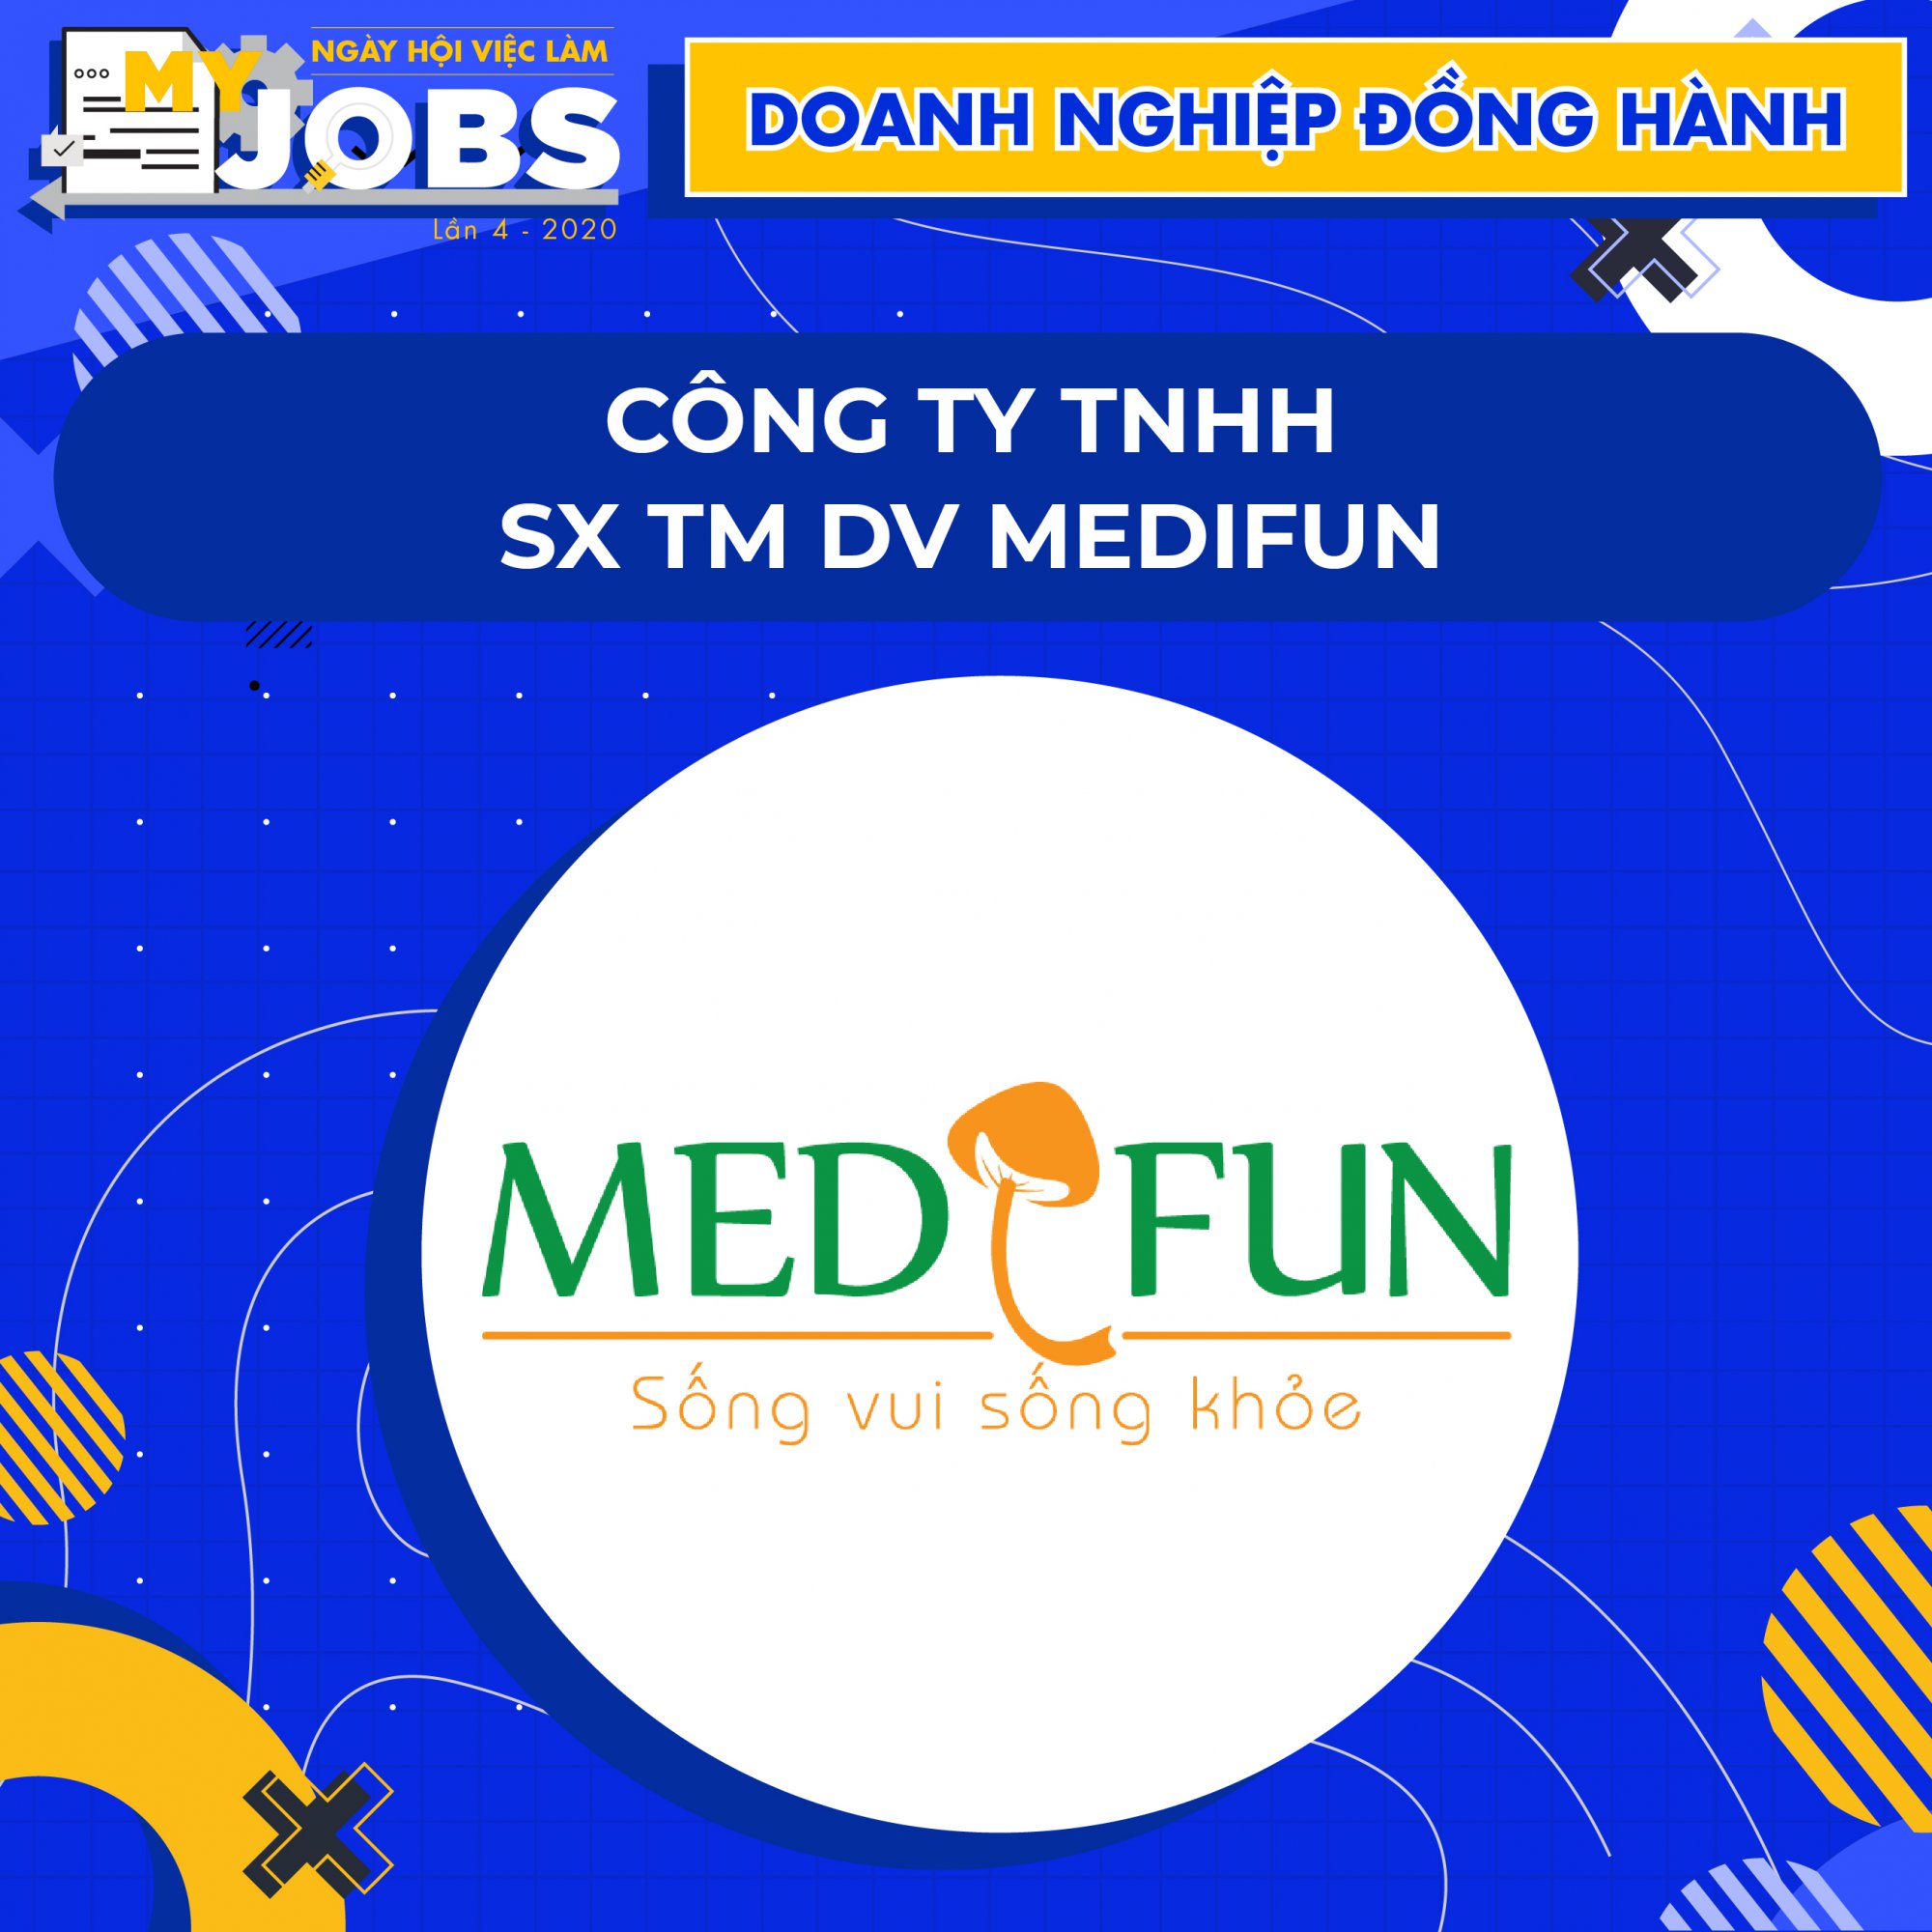 Công ty TNHH SX TM DV Medifun